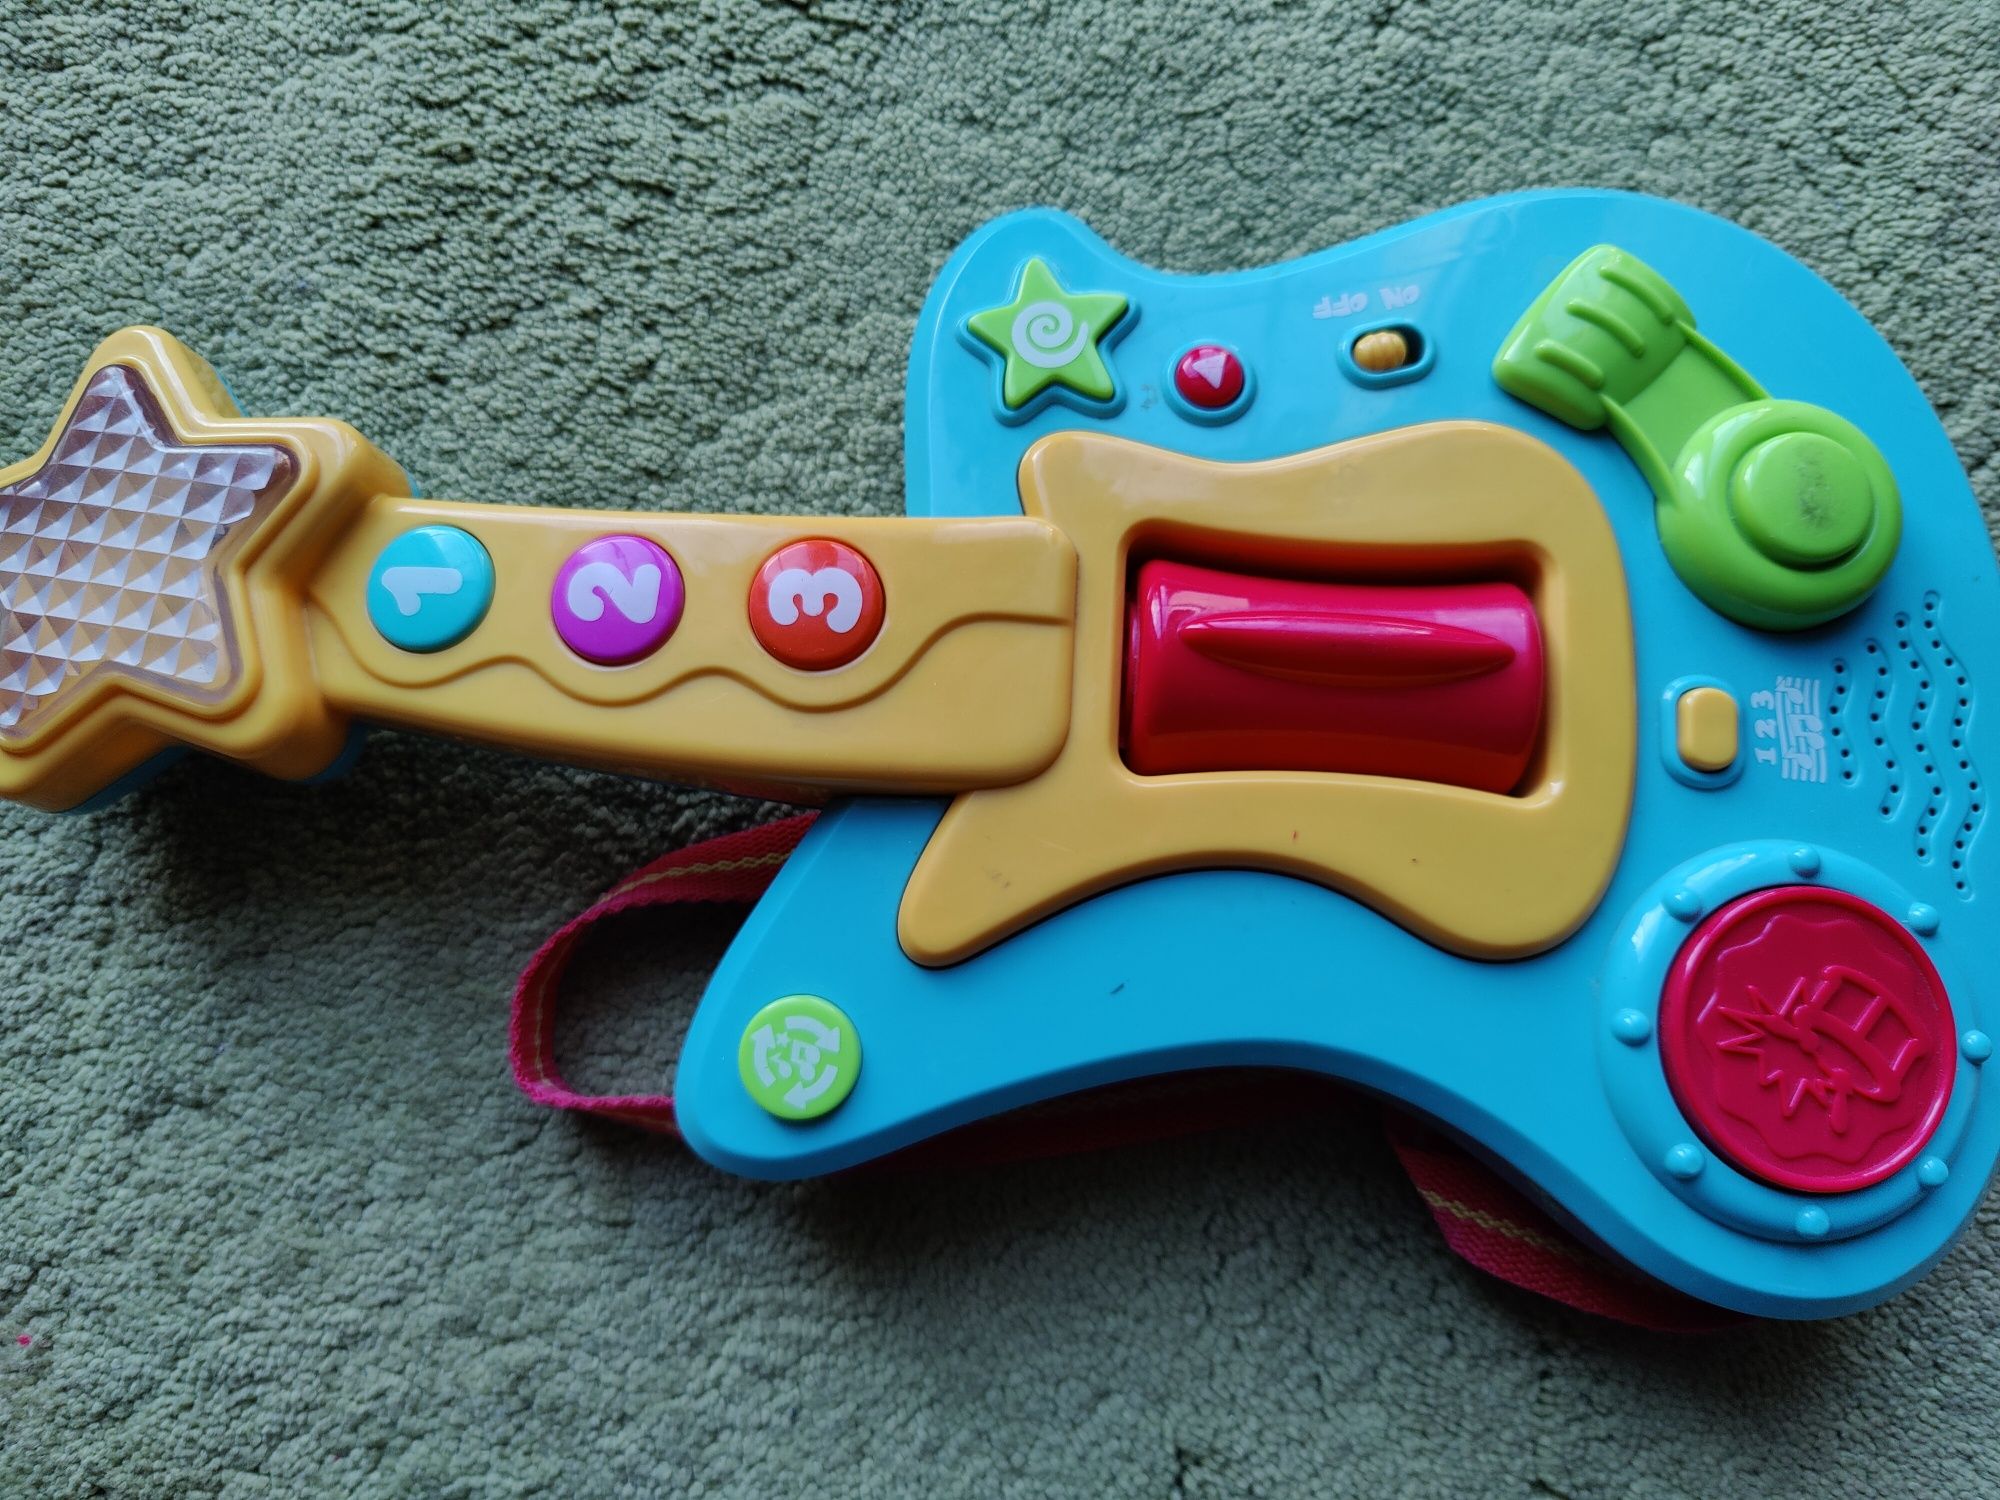 Gitara zabawkowa